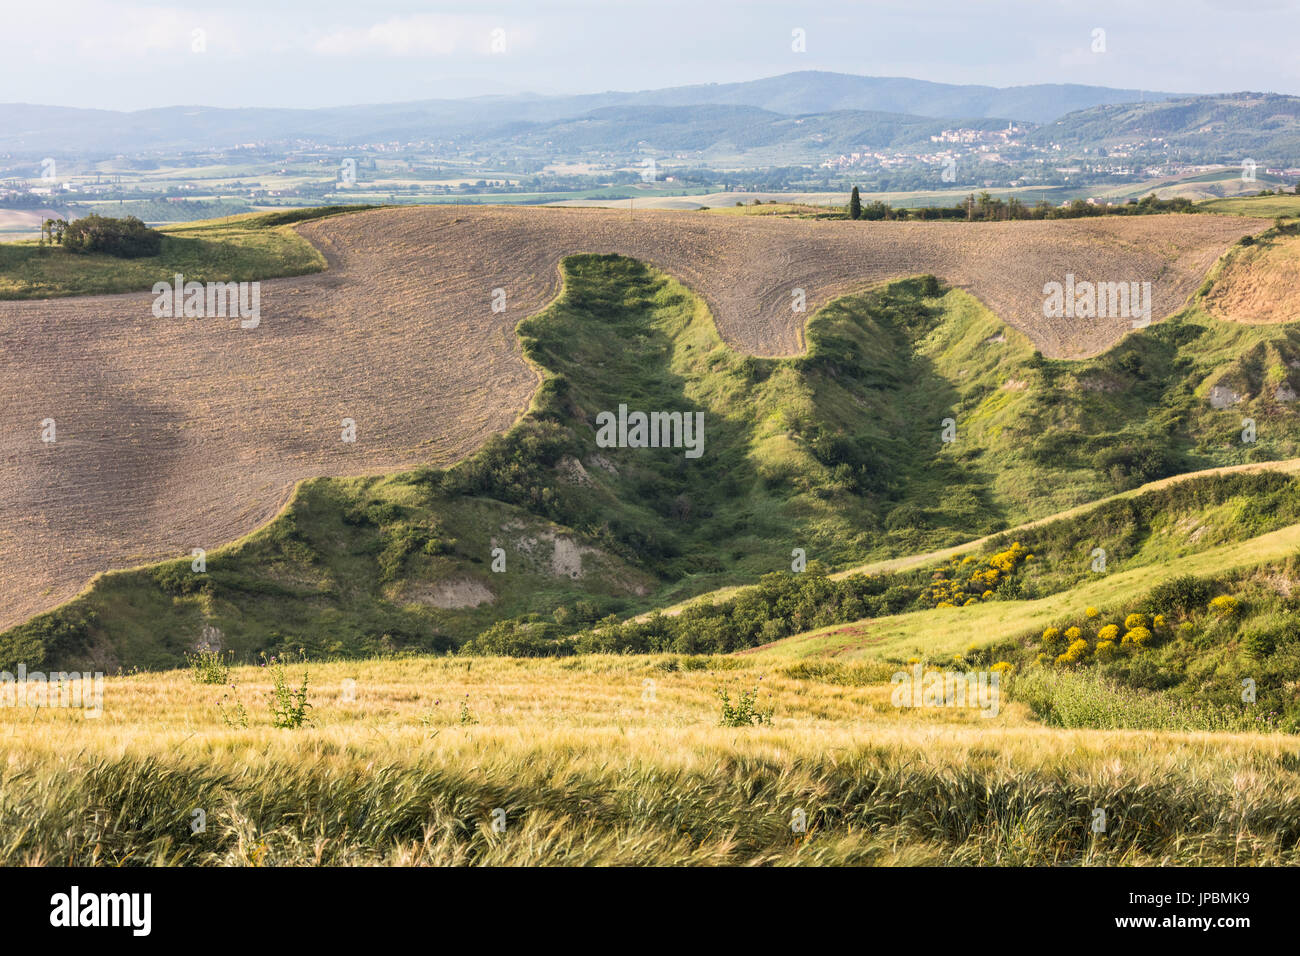 Die geschwungenen Formen der bunten Hügel von der Crete Senesi (Senese Tone) Provinz von Siena Toskana Italien Europa Stockfoto